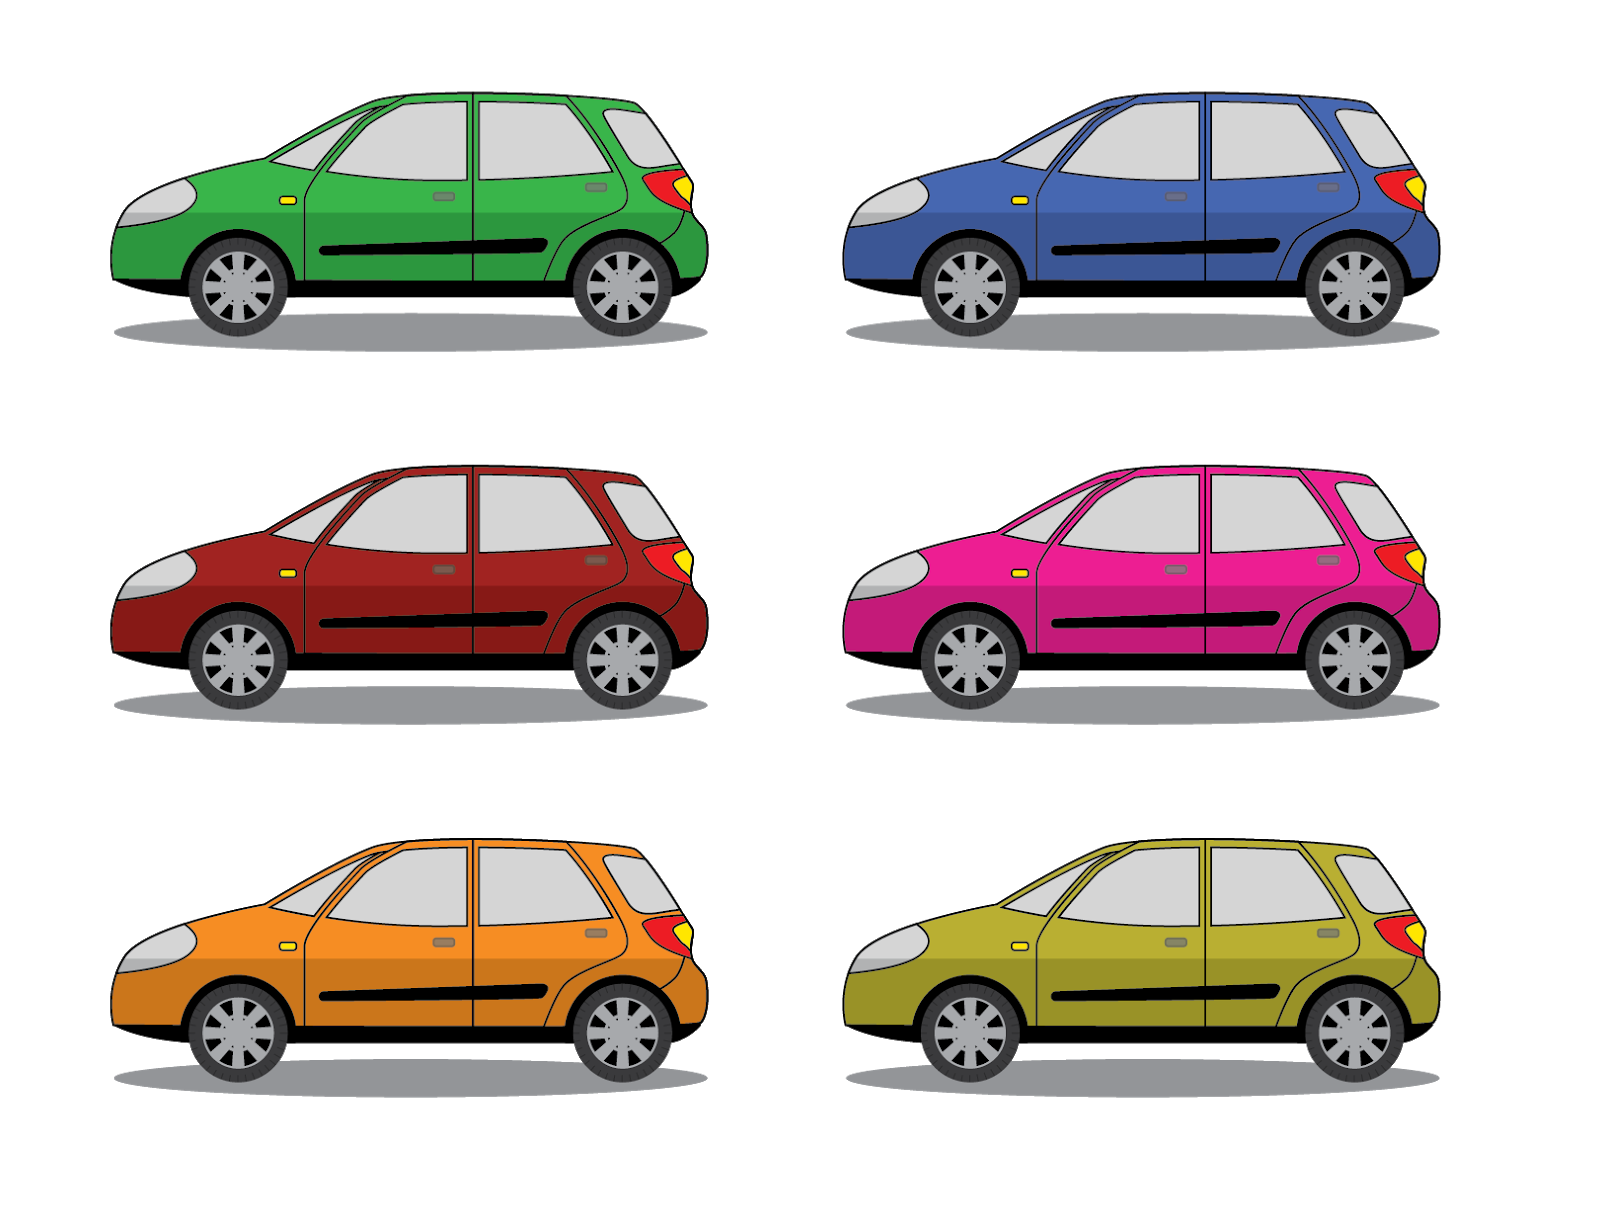 Menggambar Mobil Style Flat Dengan Adobe Illustrator